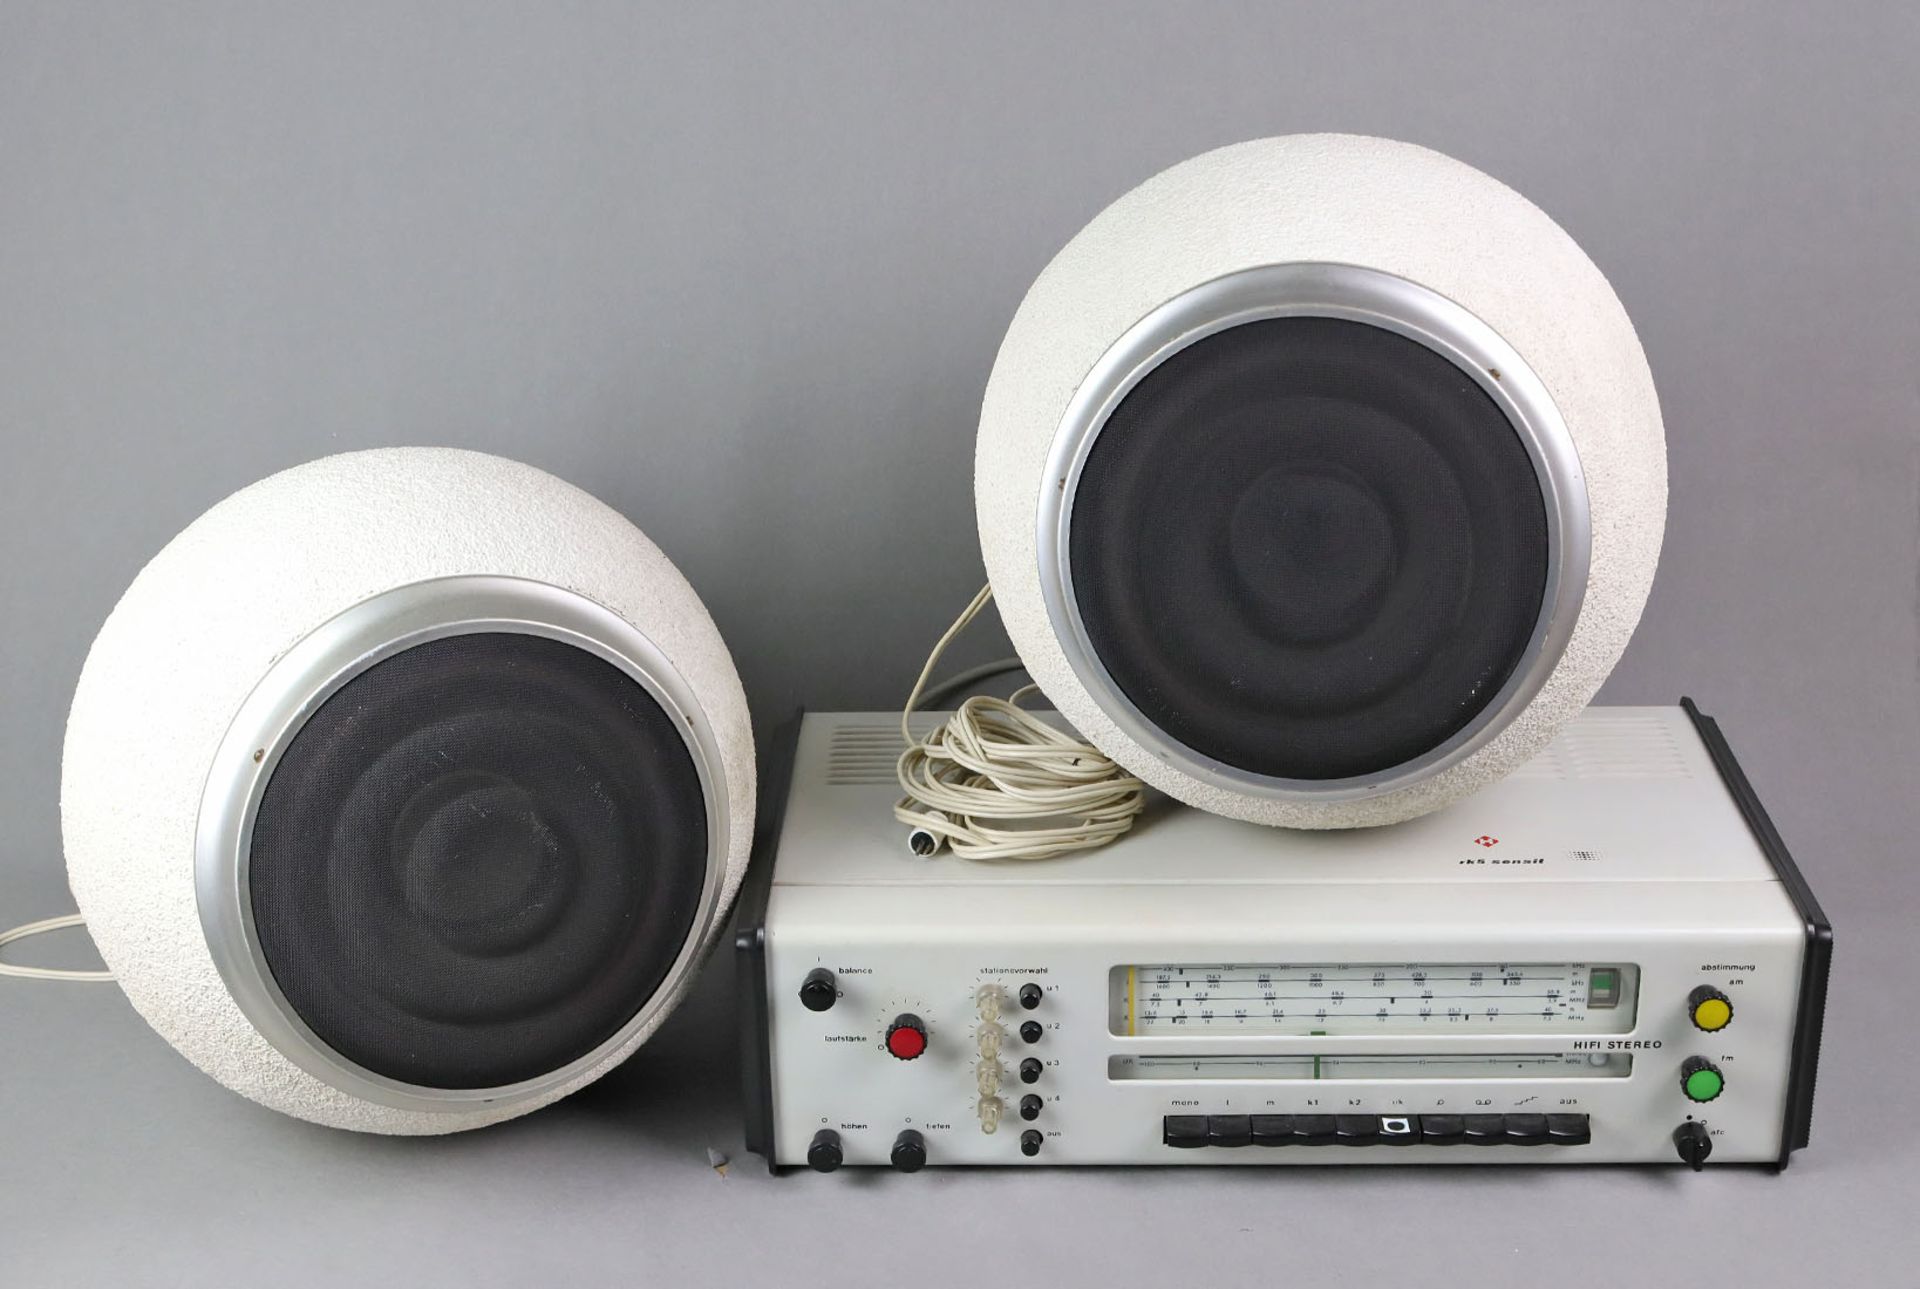 HELI-Radio u. Lautsprecherkugel Paarseinerzeit das fortschrittlichste HF-Stereo-Steuergerät, es